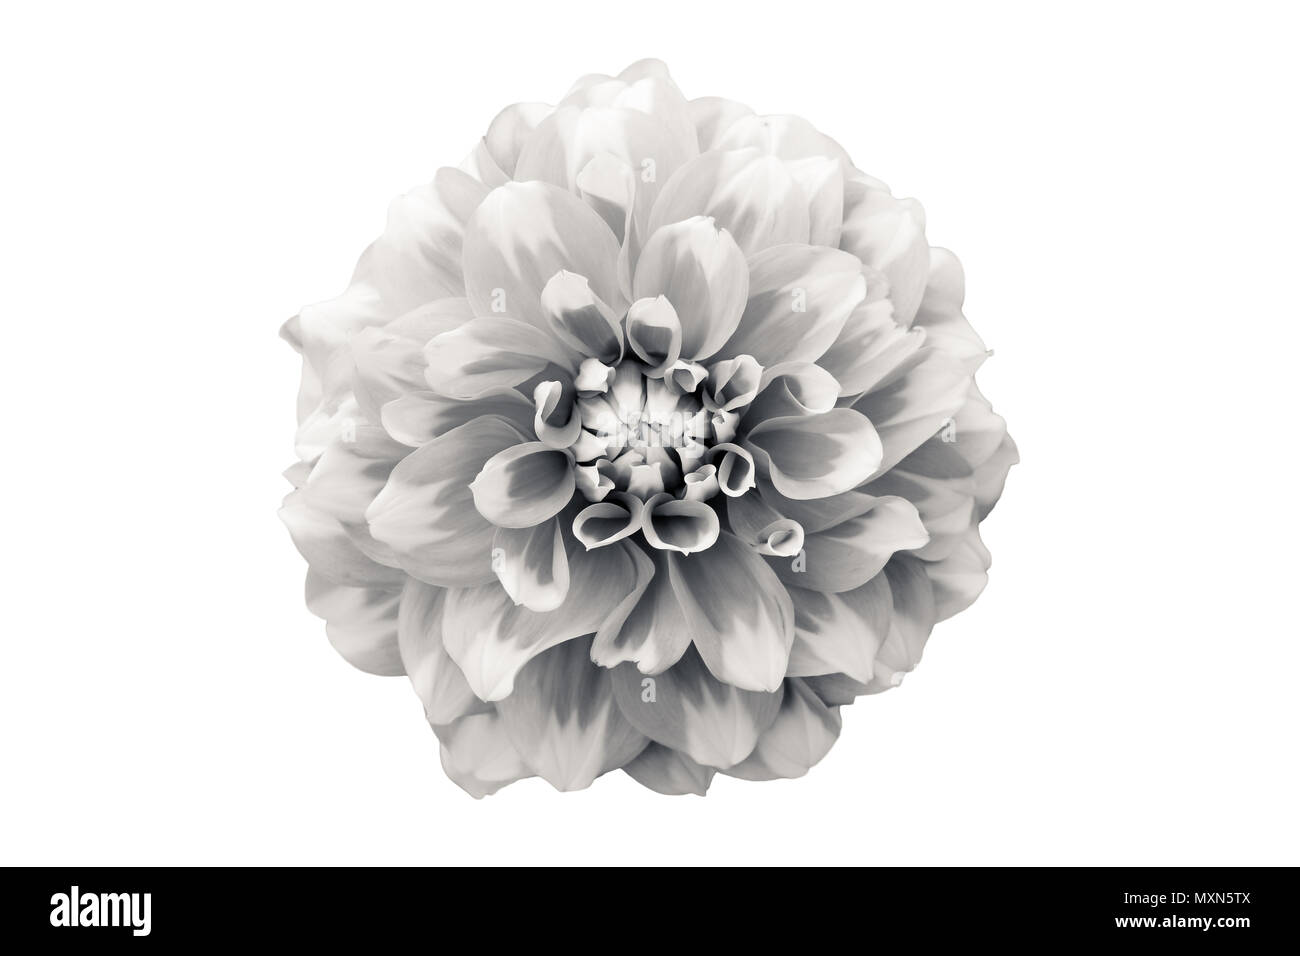 Details der Dahlie Blume Makro Fotografie. Schwarz-weiß Foto betont Textur, hohen Kontrast und verschlungene florale Muster, ähnlich einem drawi Stockfoto